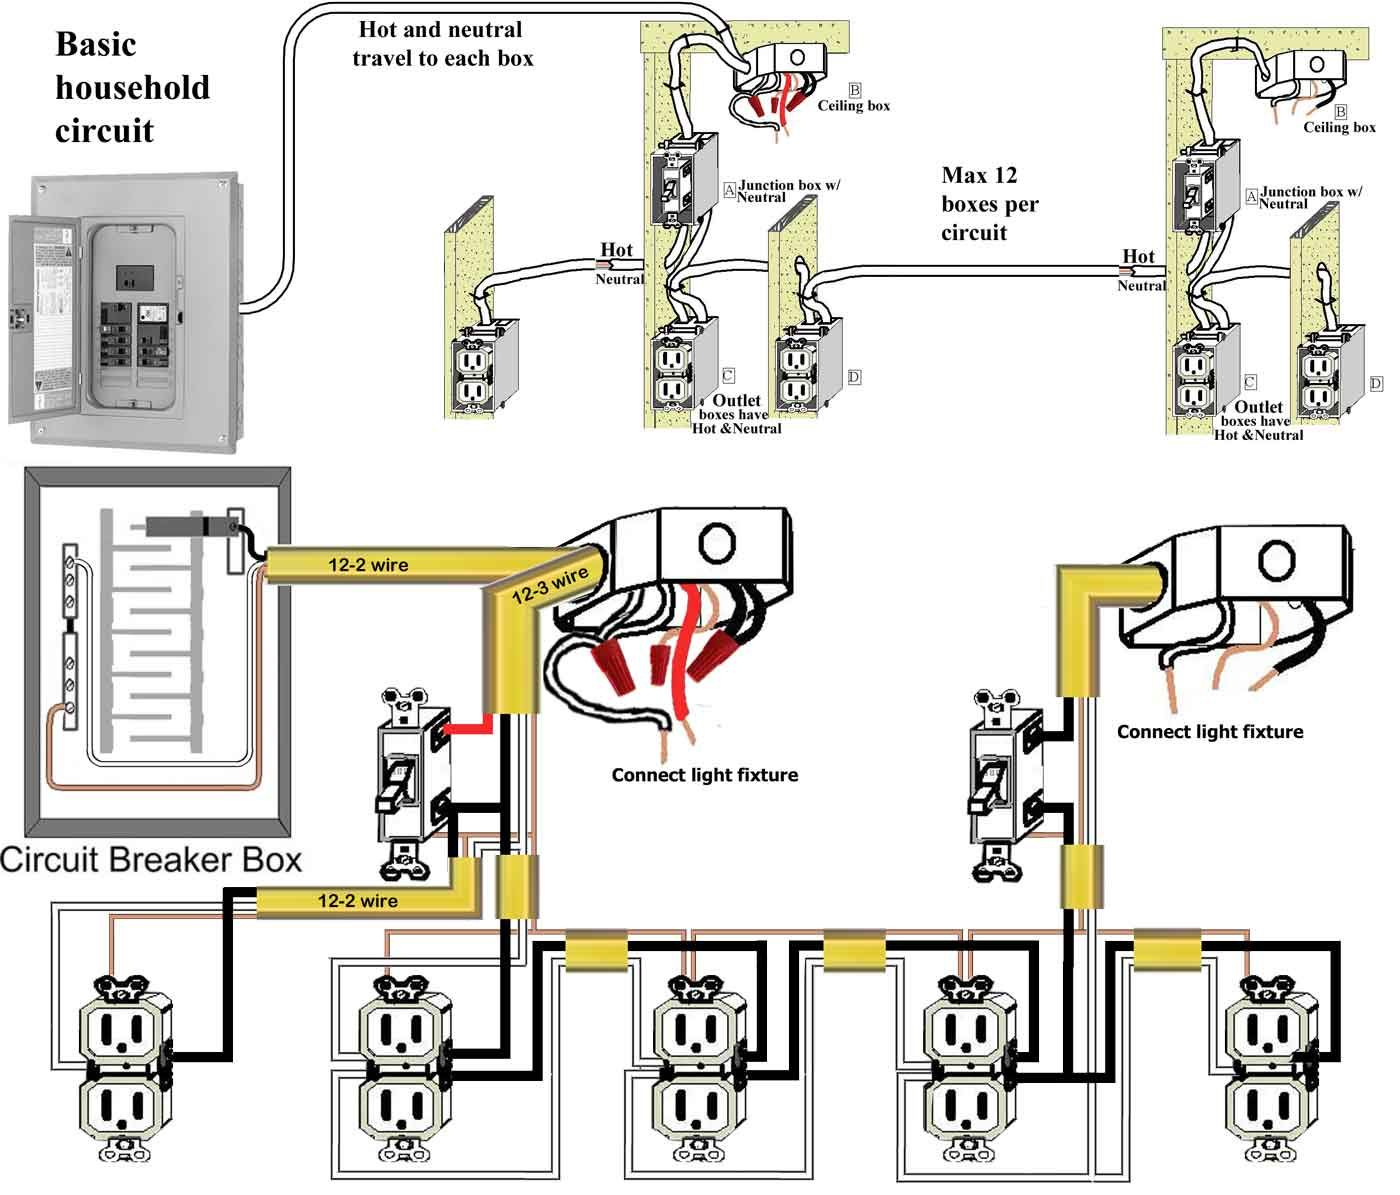 Basic Home Wiring Circuits - Wiring Diagram - Basic House Wiring Diagram